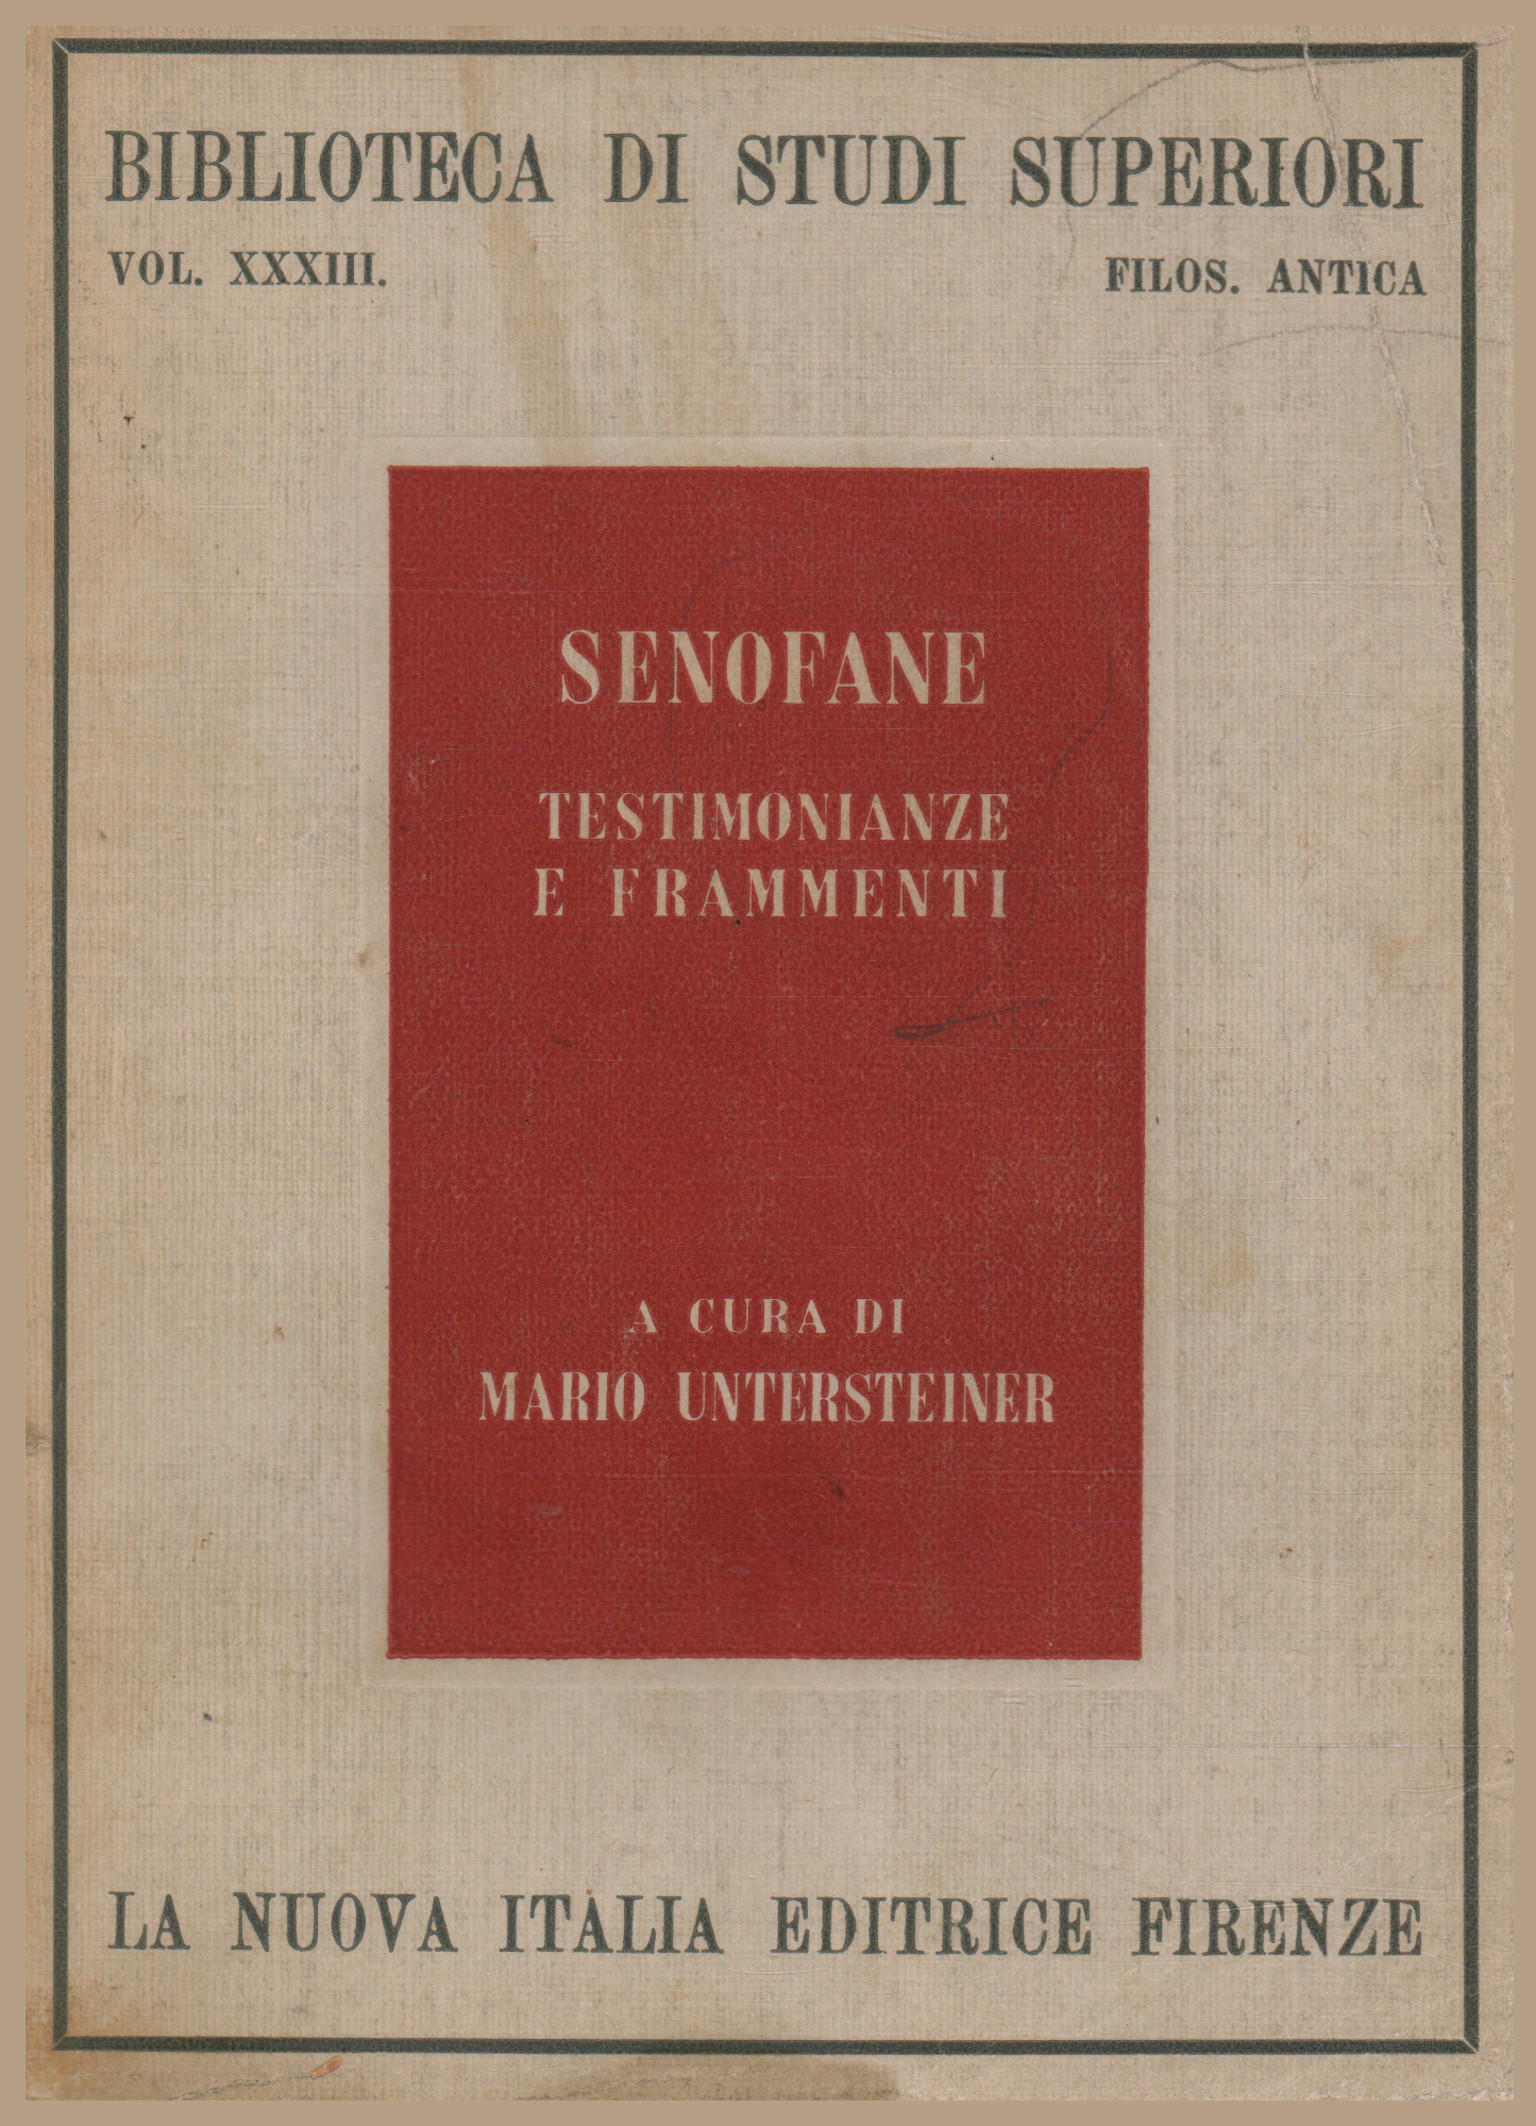 Testimonianze e frammenti, Senofane